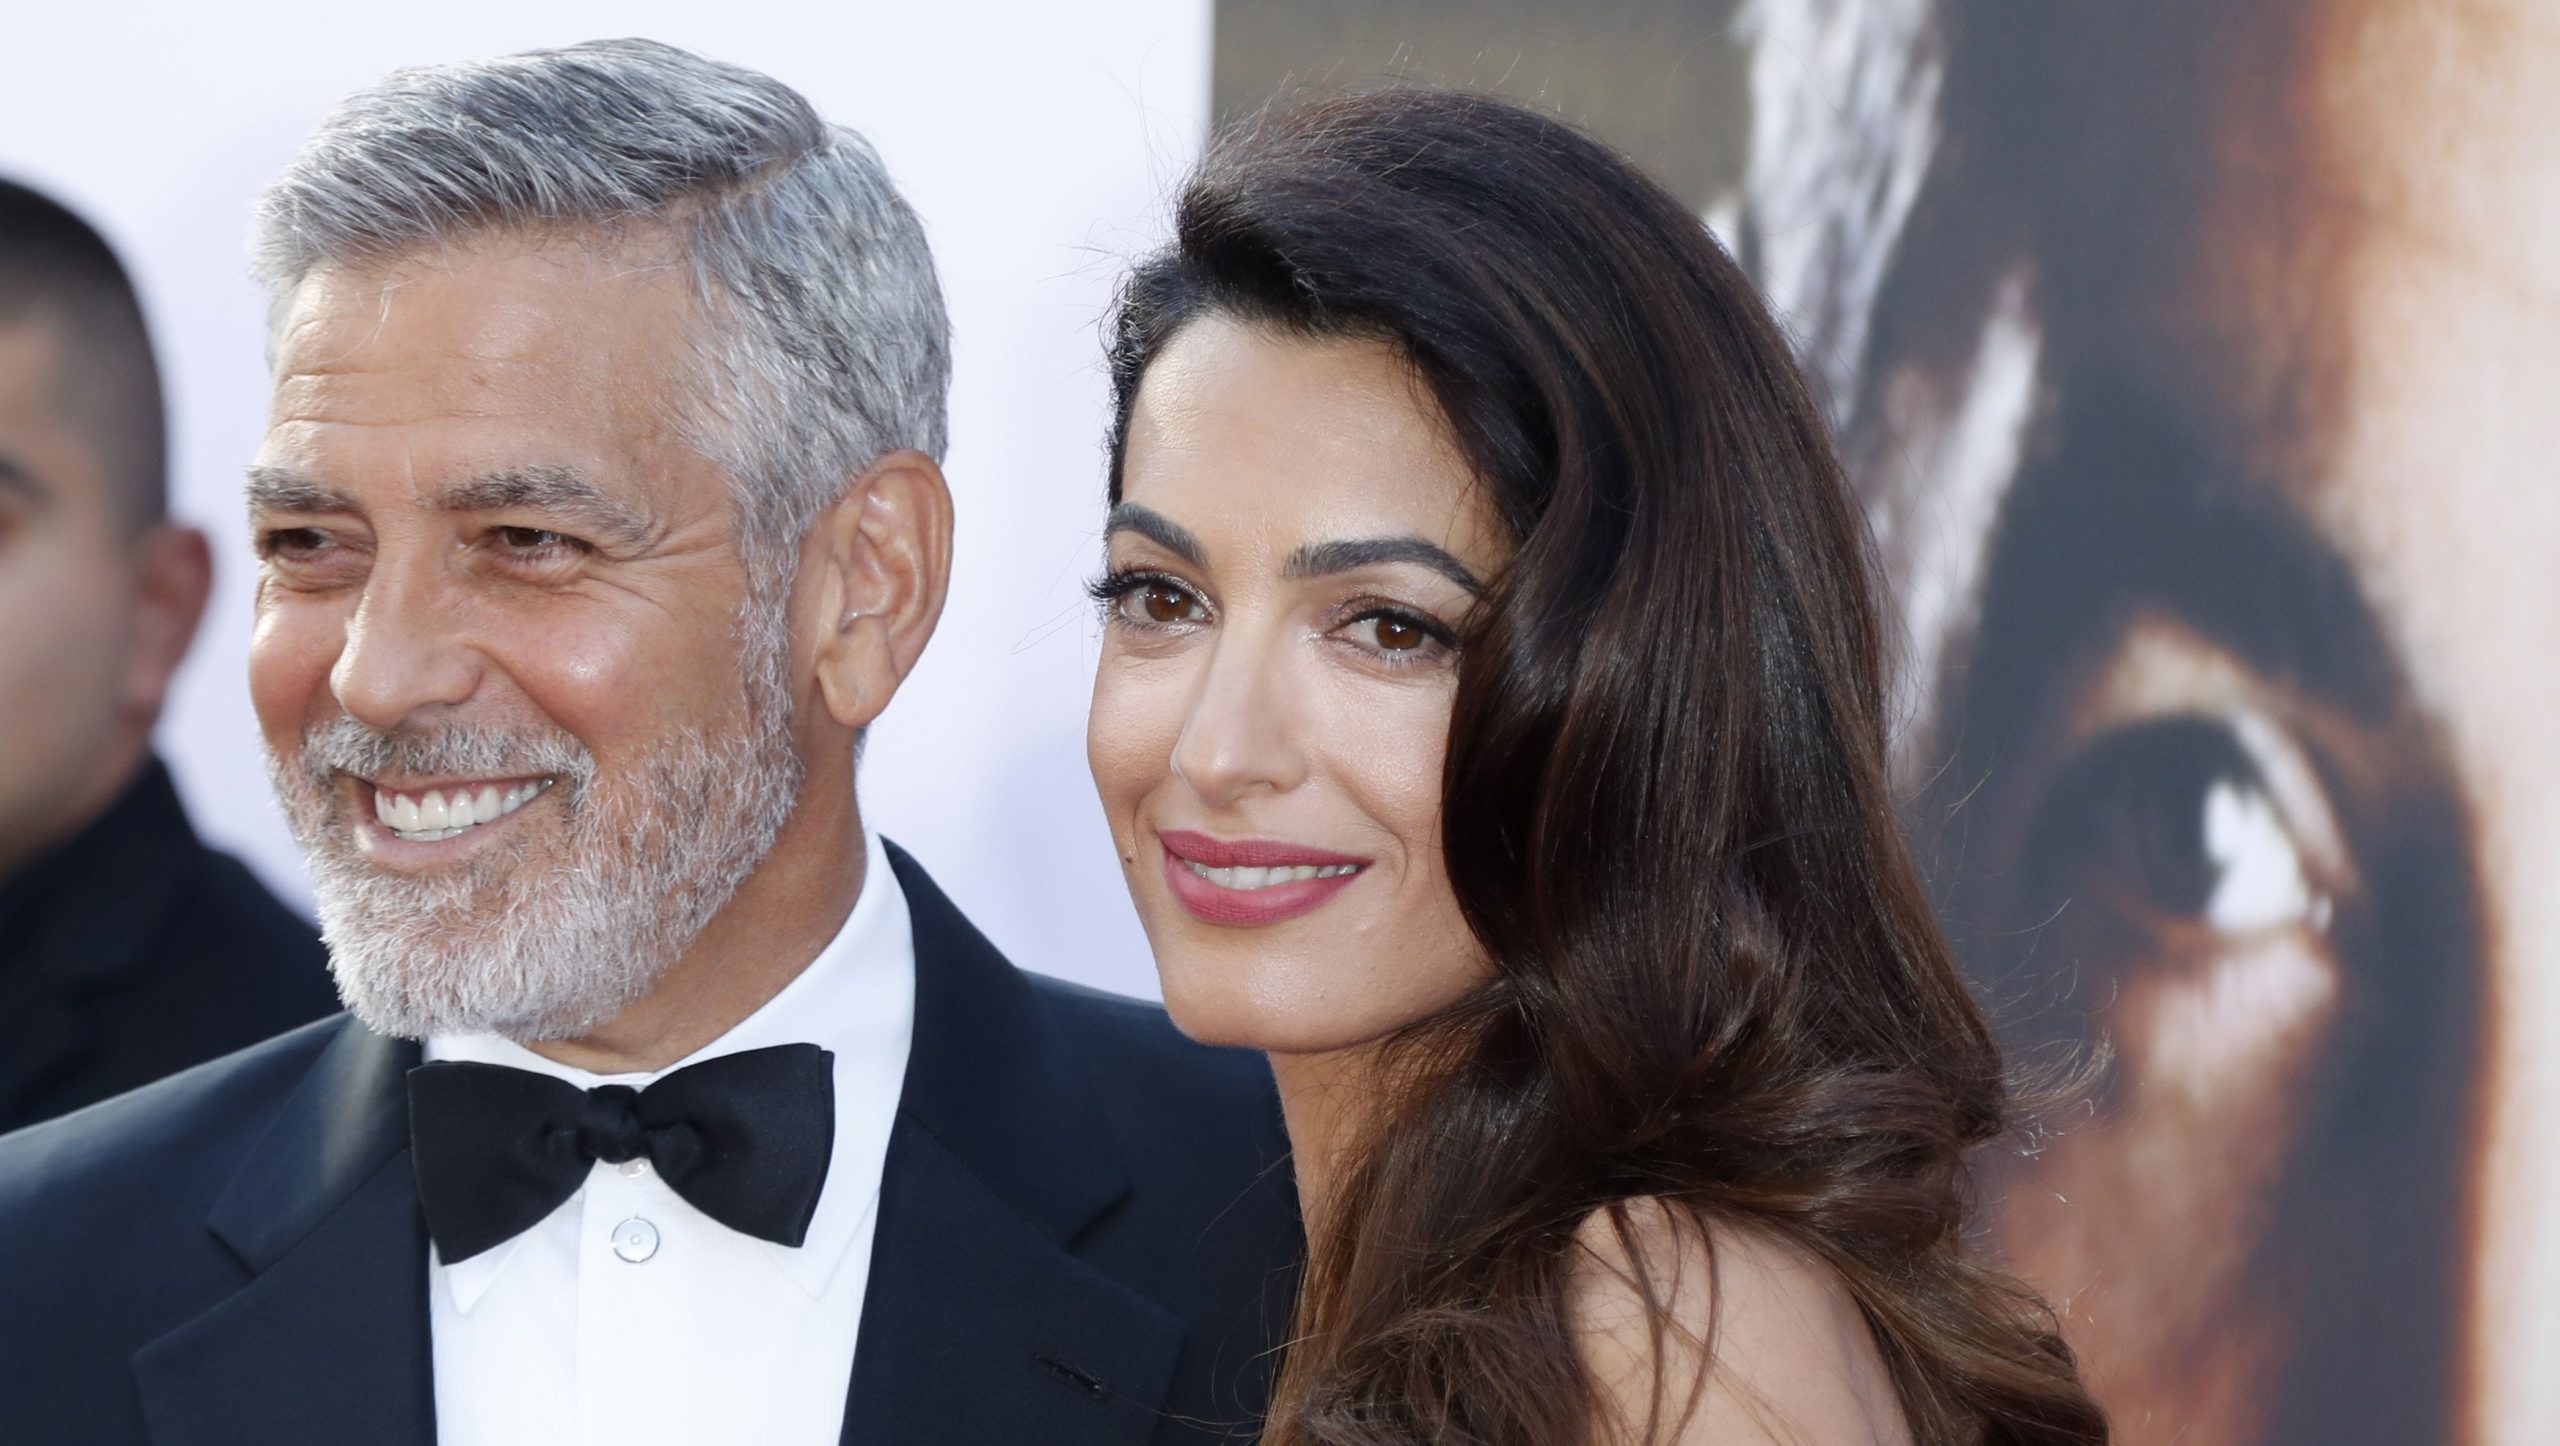 George dhe Amal Clooney dhurojnë 1 milion dollarë në luftën kundër koronavirusit